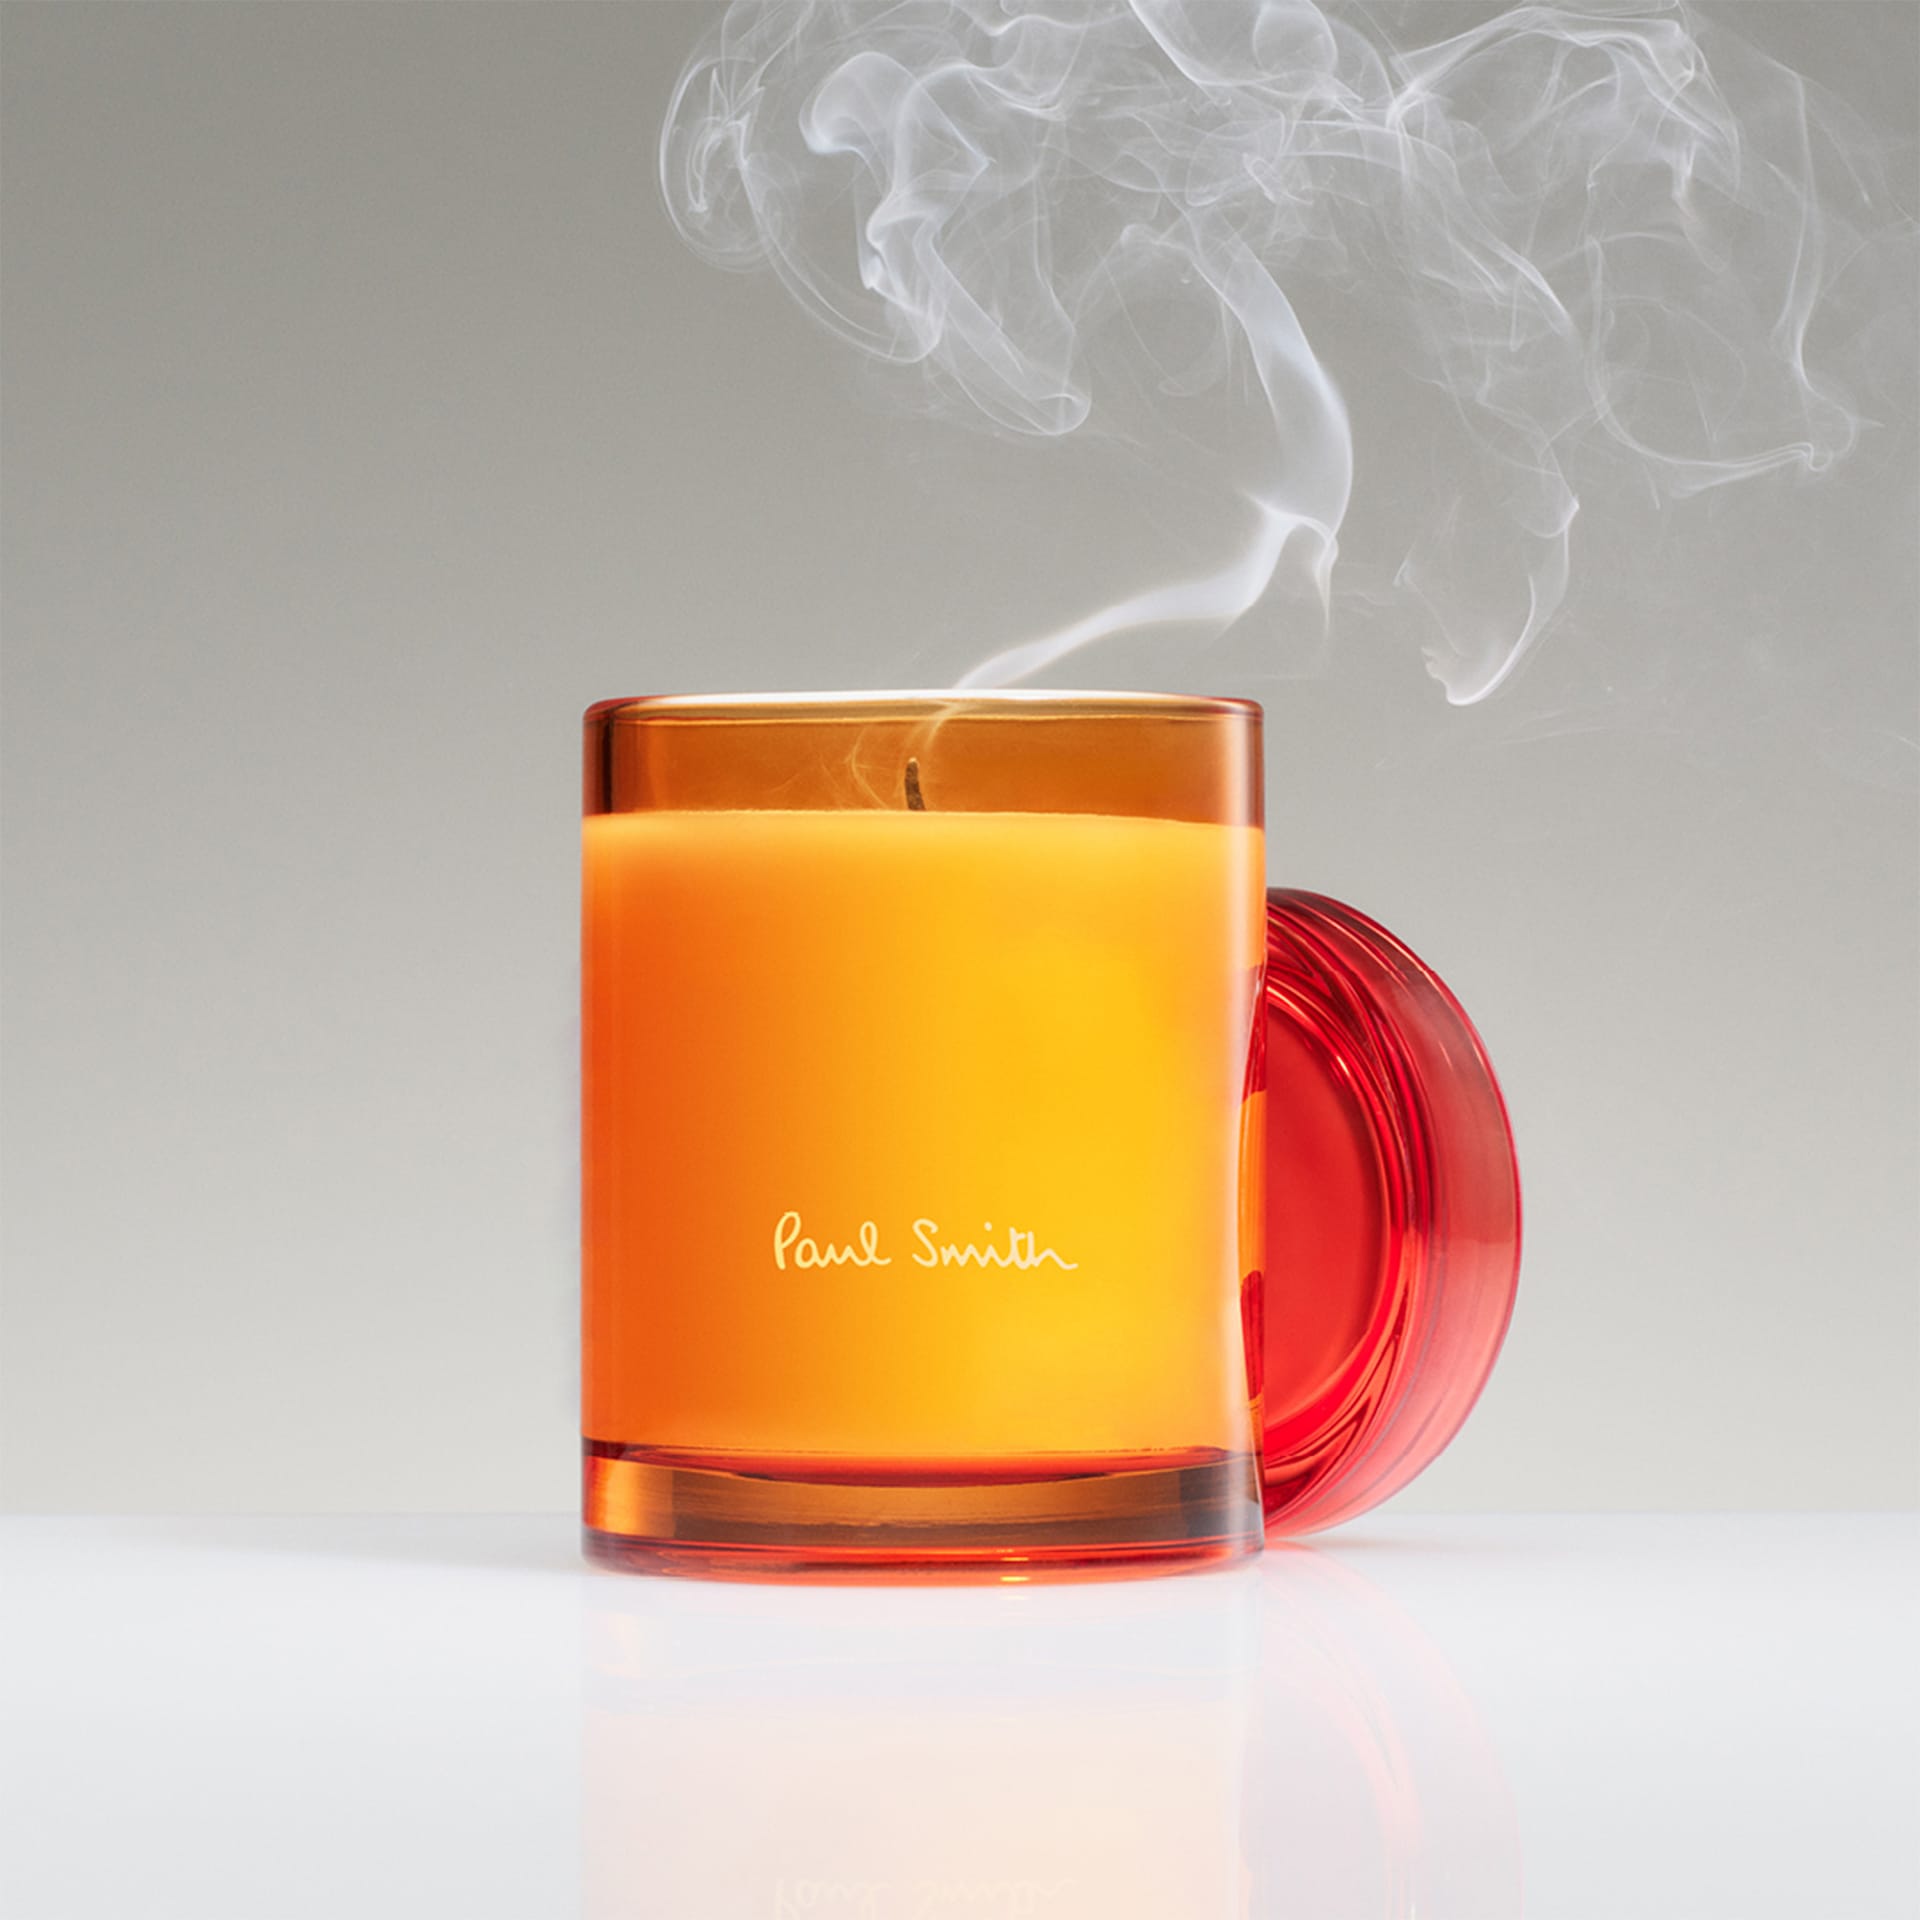 Paul Smith Bookworm Candle - Paul Smith Home Fragrance - NO GA